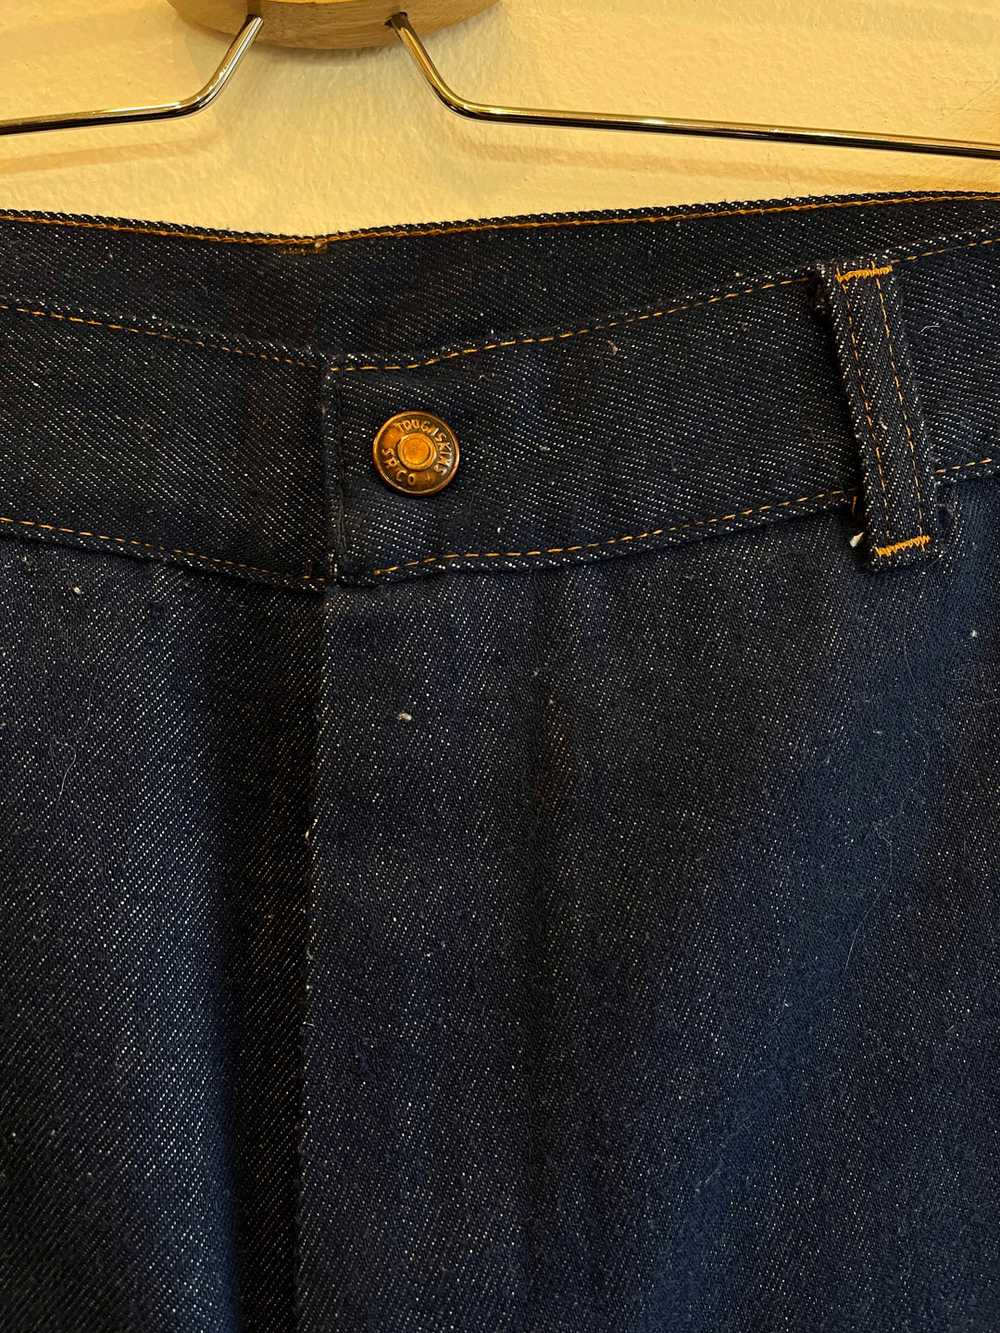 Vintage 1960/1970’s Tough Skins Denim Jeans - image 2